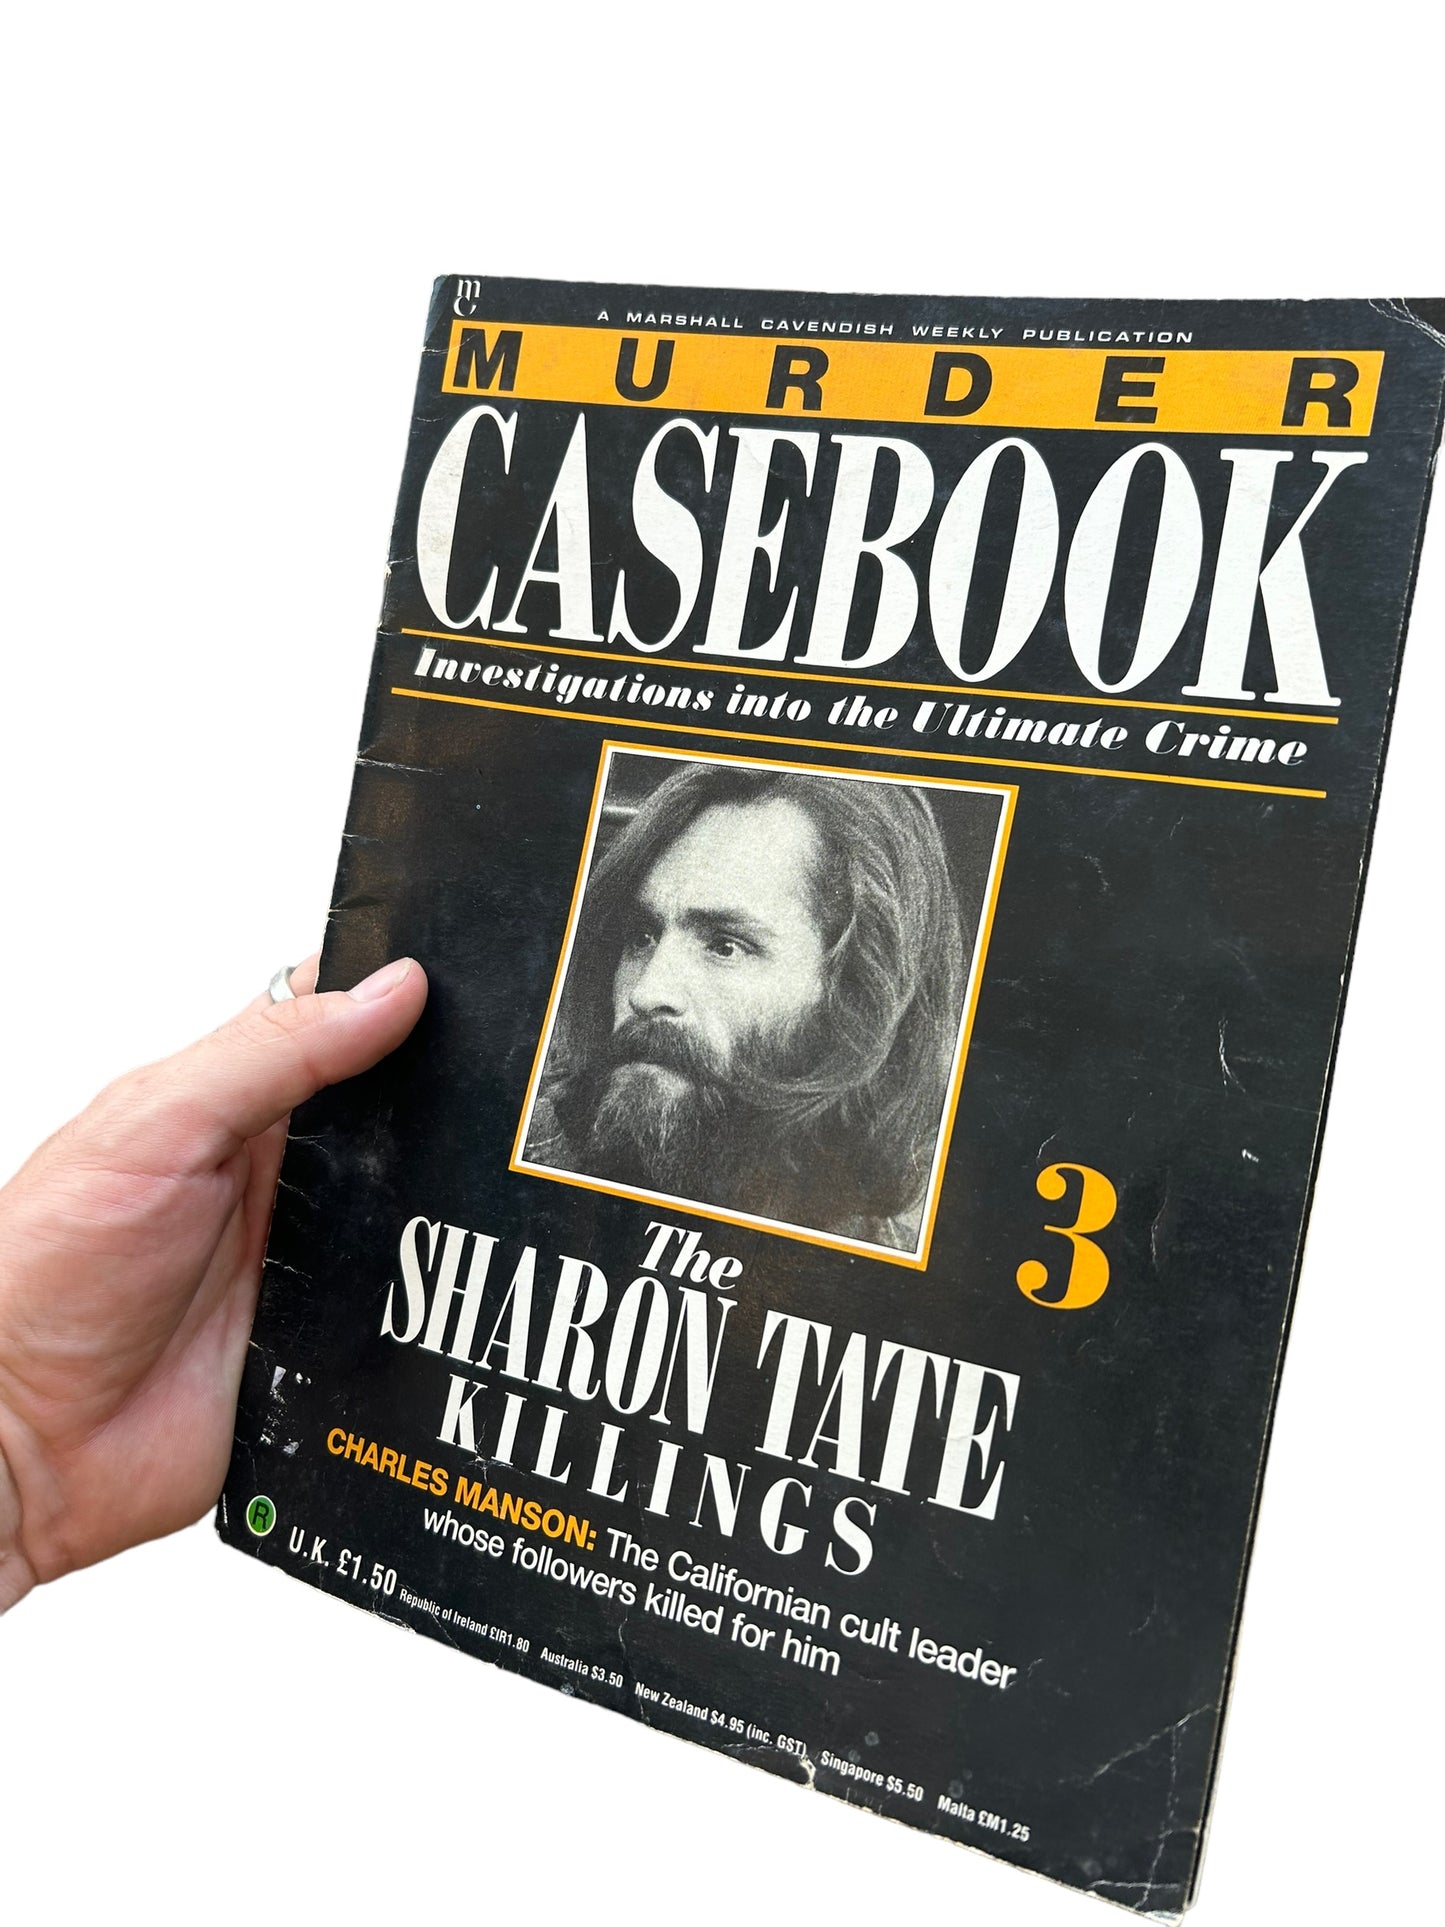 1990 Murder Casebook